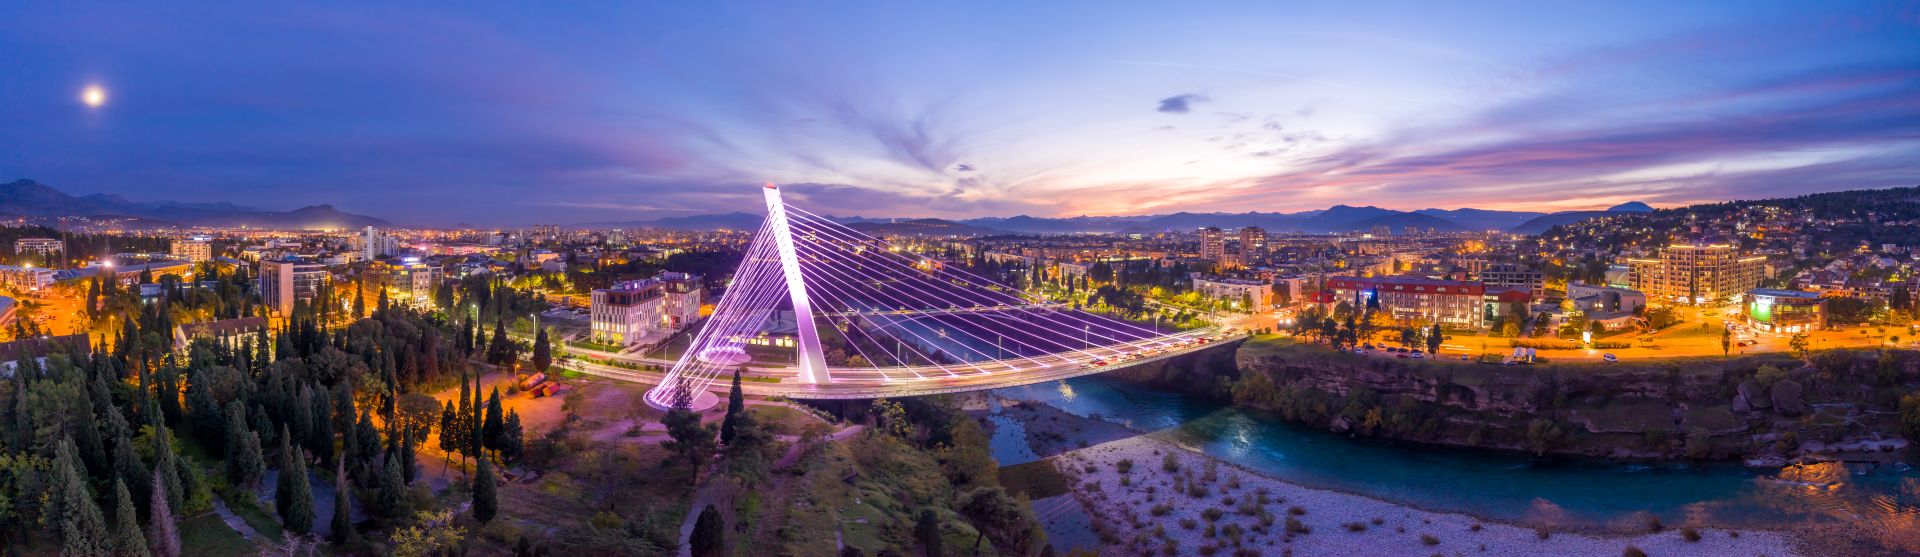 Illuminated millennium bridge over the Moraca river